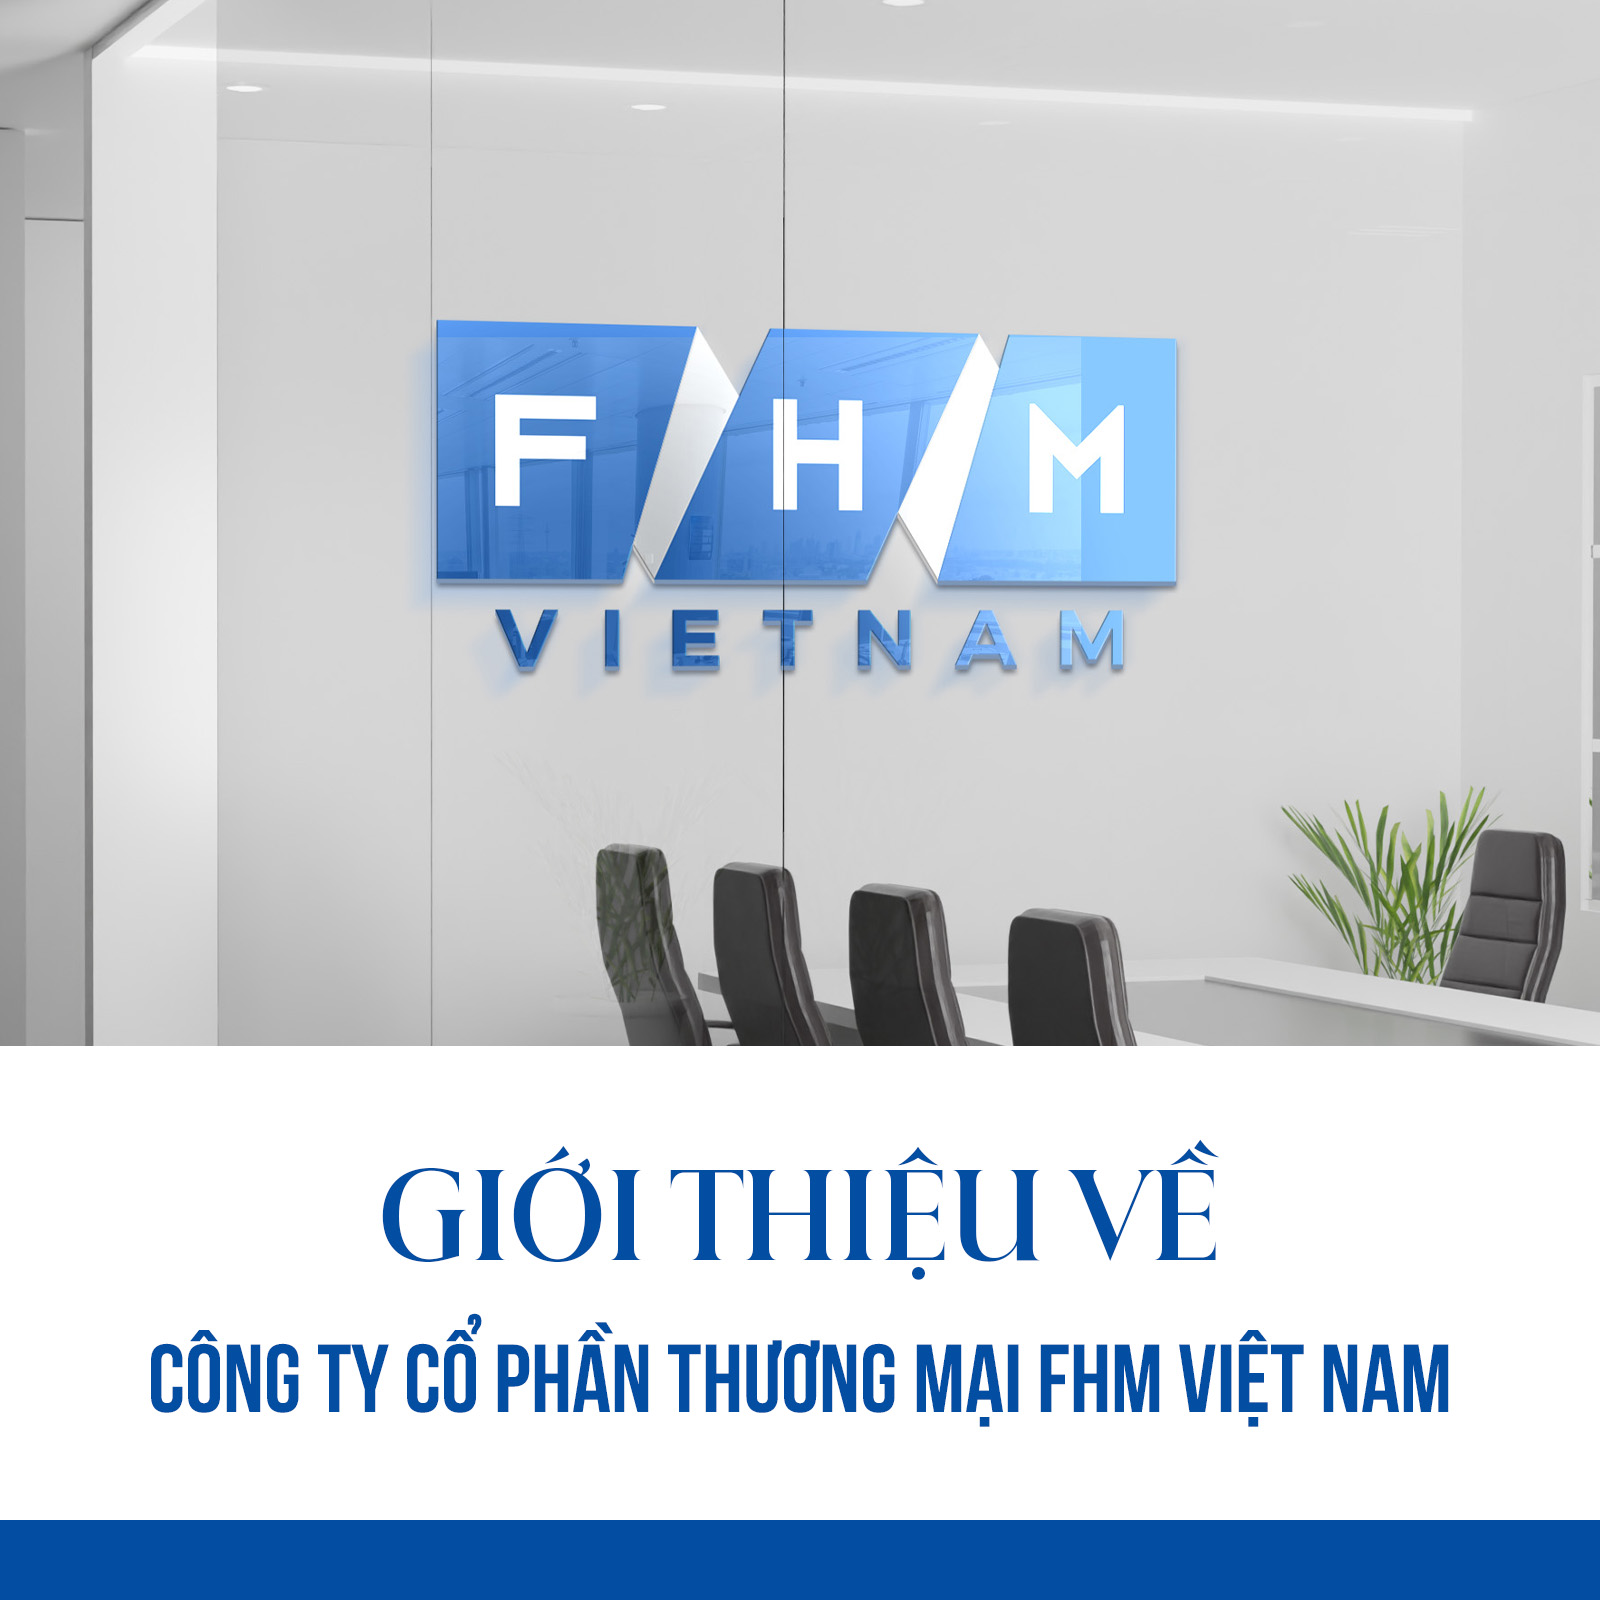 Giới thiệu về Công ty Cổ phần Thương mại FHM Việt Nam